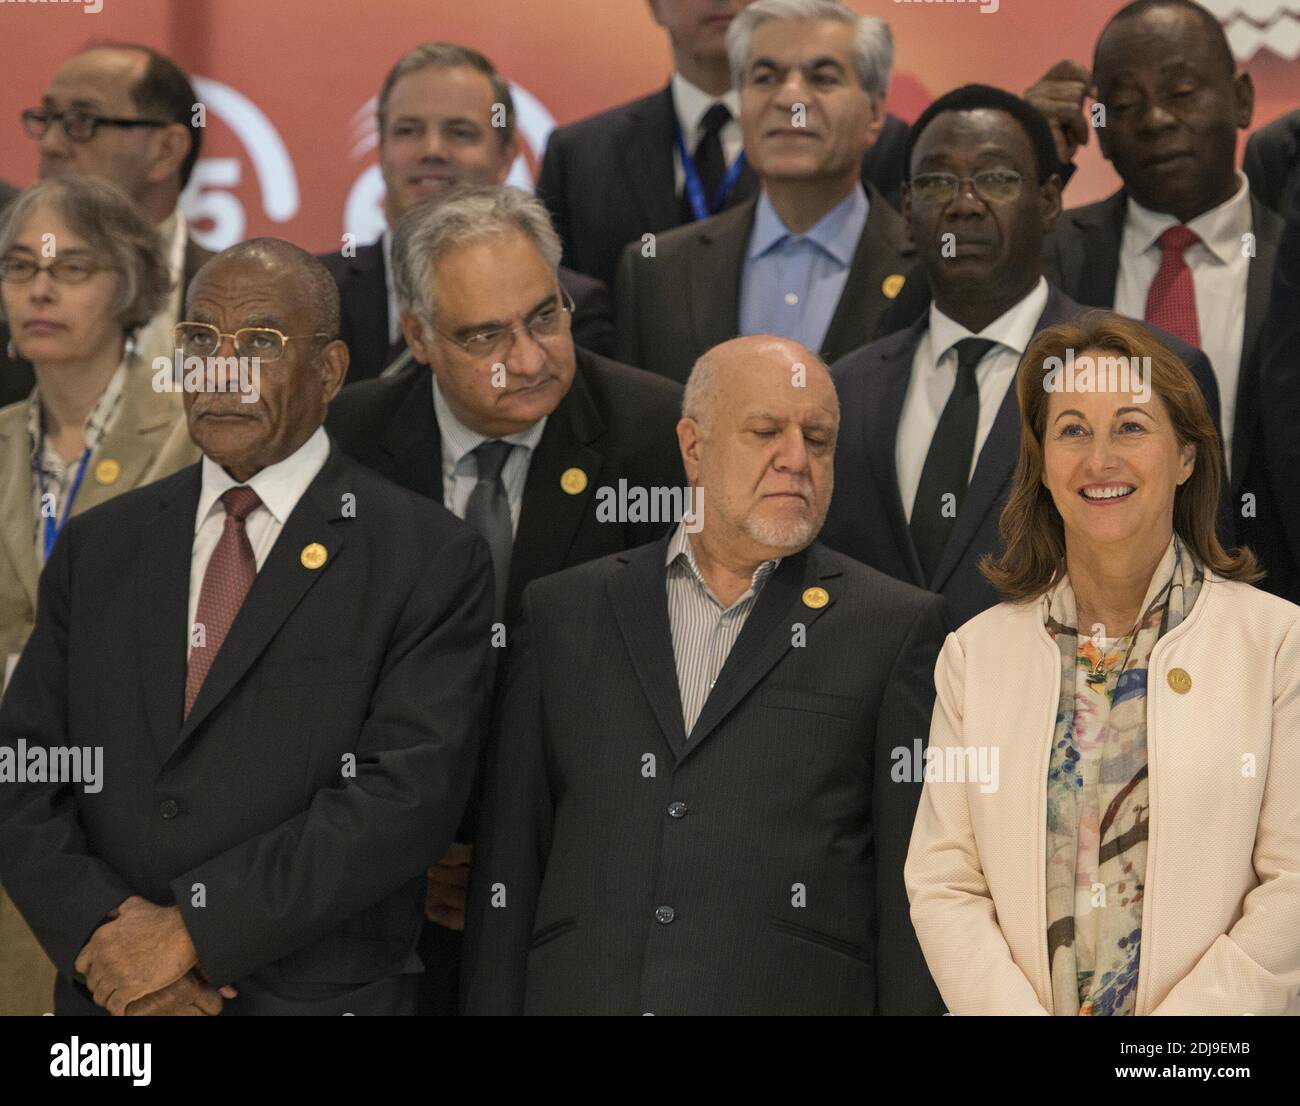 Segolene Royal assiste à la réunion des ministres de l'OPEP à Alger, en Algérie, le 27 septembre 2016. Le cartel des producteurs de pétrole de l'OPEP a convenu d'un accord préliminaire pour réduire la production pour la première fois en huit ans, ce qui a provoqué une flambée des prix du brut. Brent crude, la référence internationale pour le pétrole, a augmenté de près de 6% à près d'un baril sur la presse. Photo par Ammi Louiza/ABACAPRESS.COM Banque D'Images